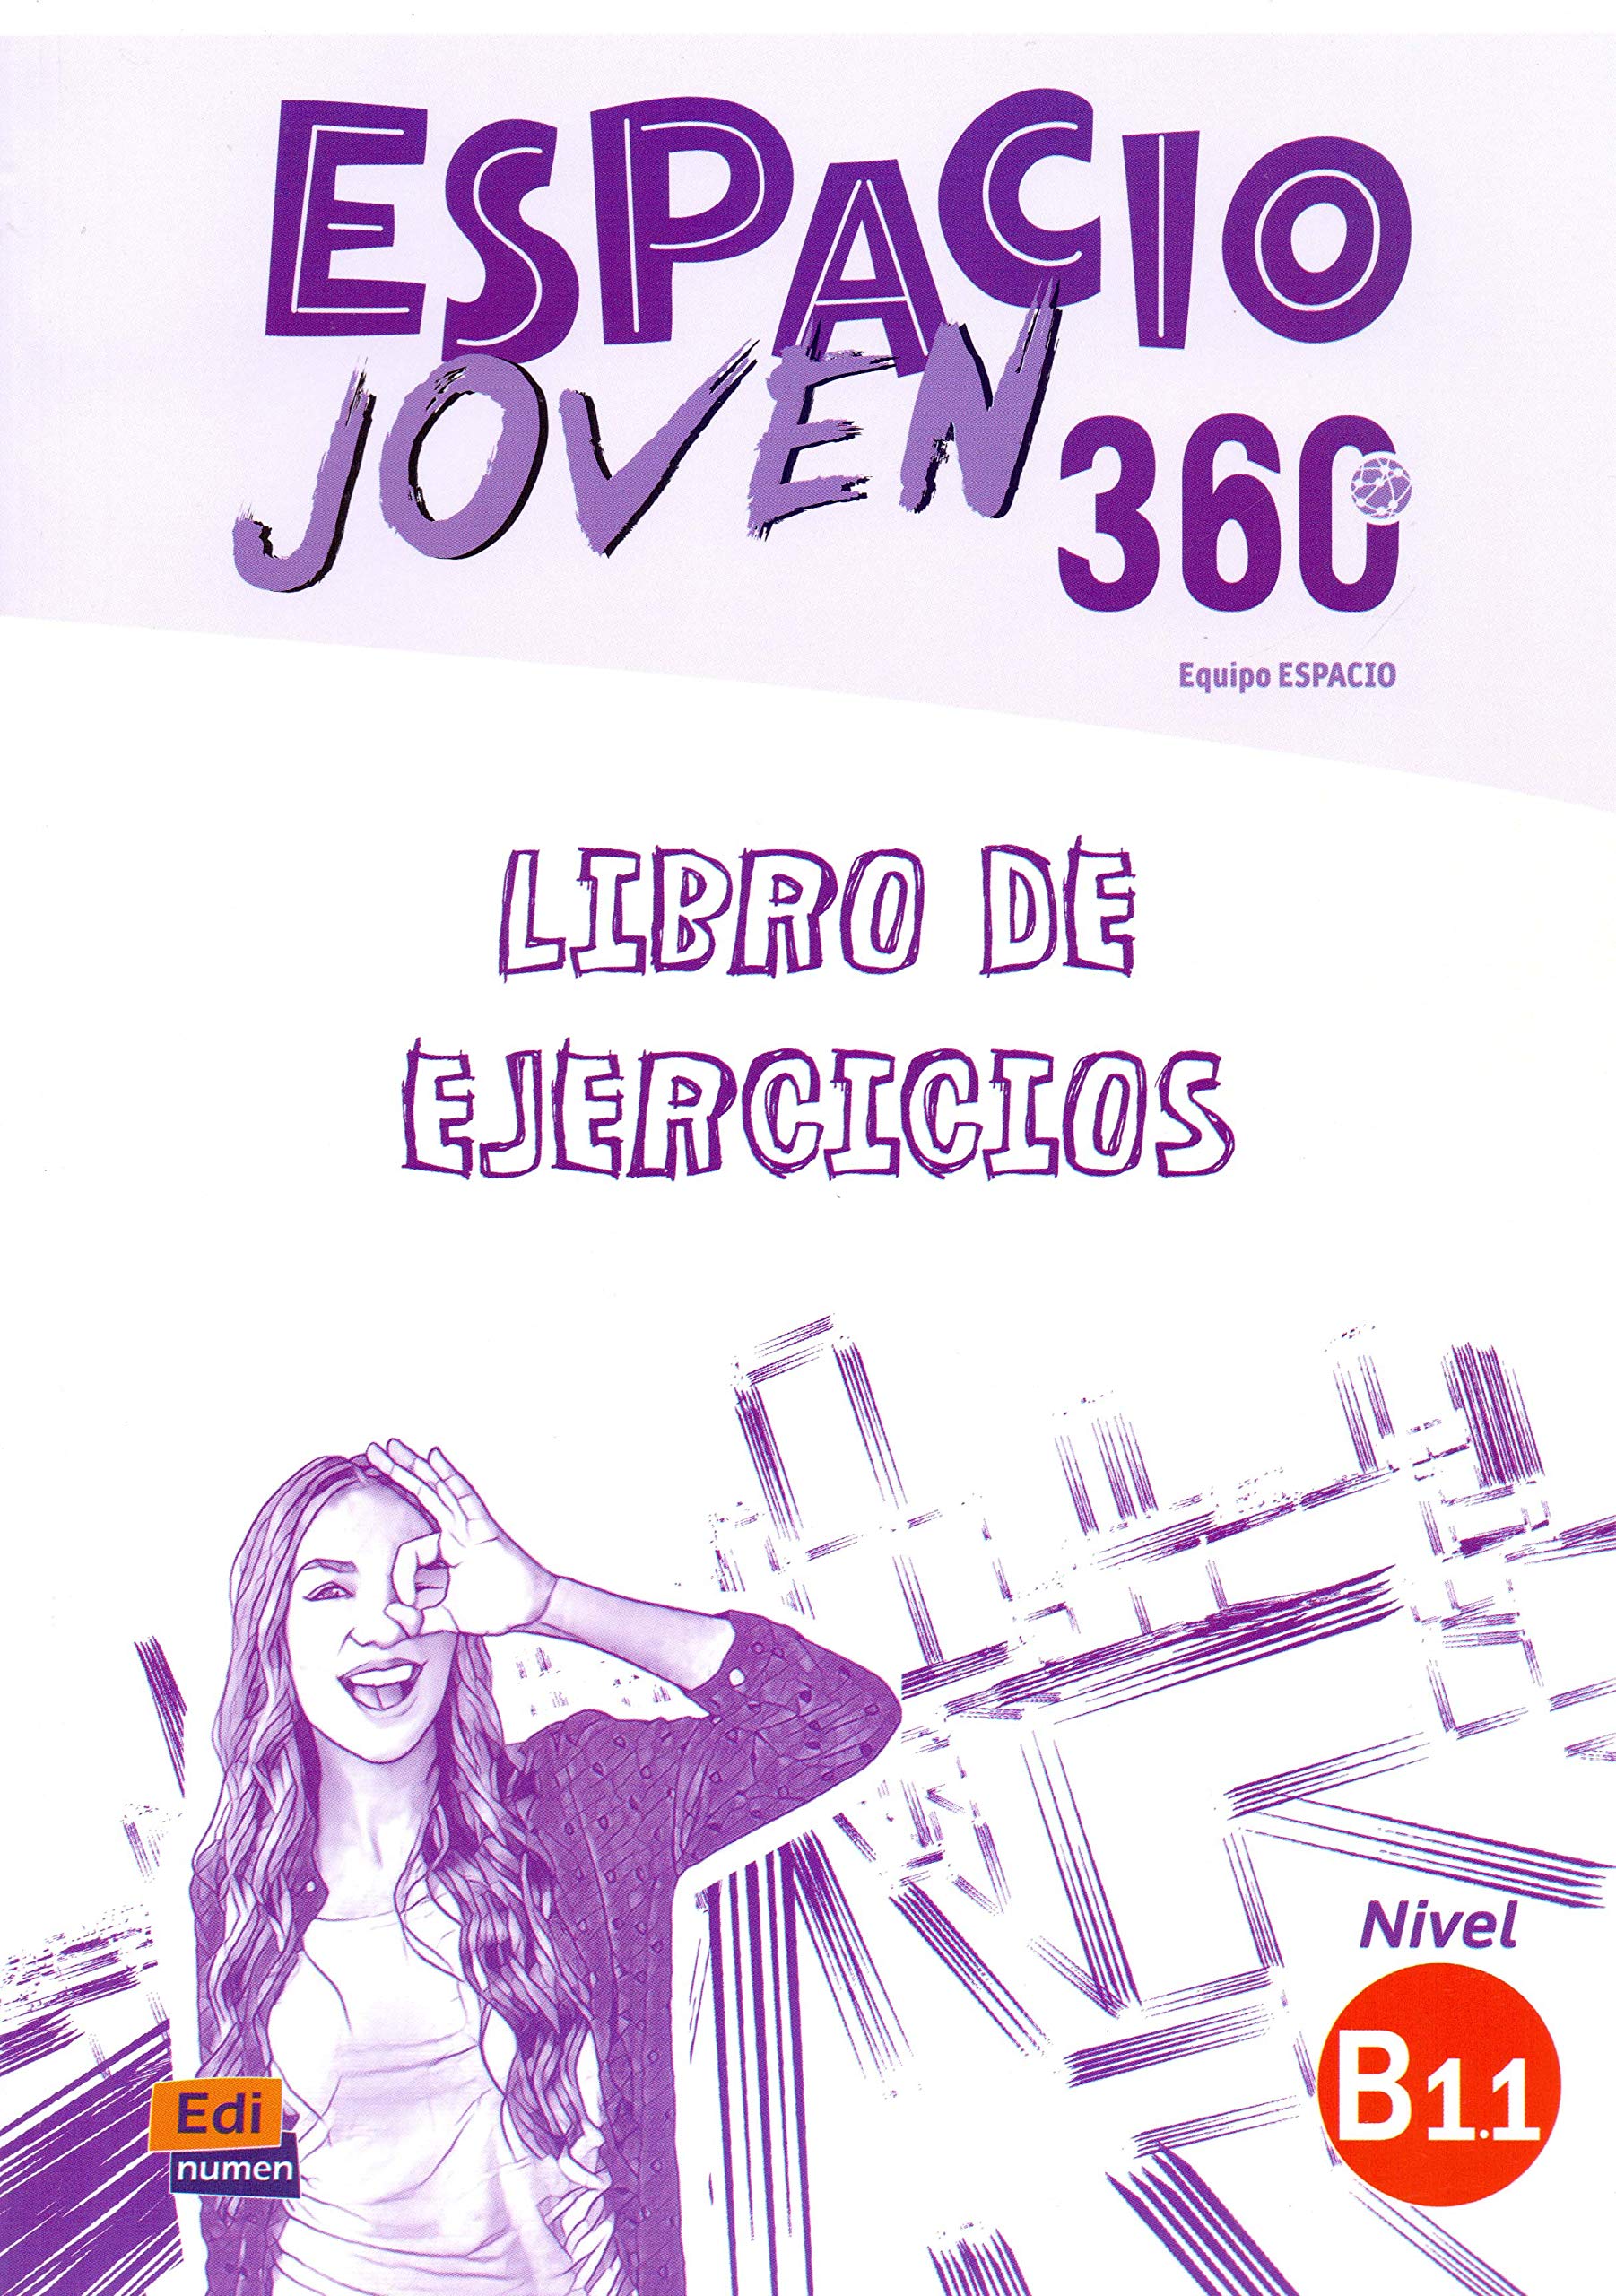 ESPACIO JOVEN 360 Nivel B 1.1 Libro de ejercicios 